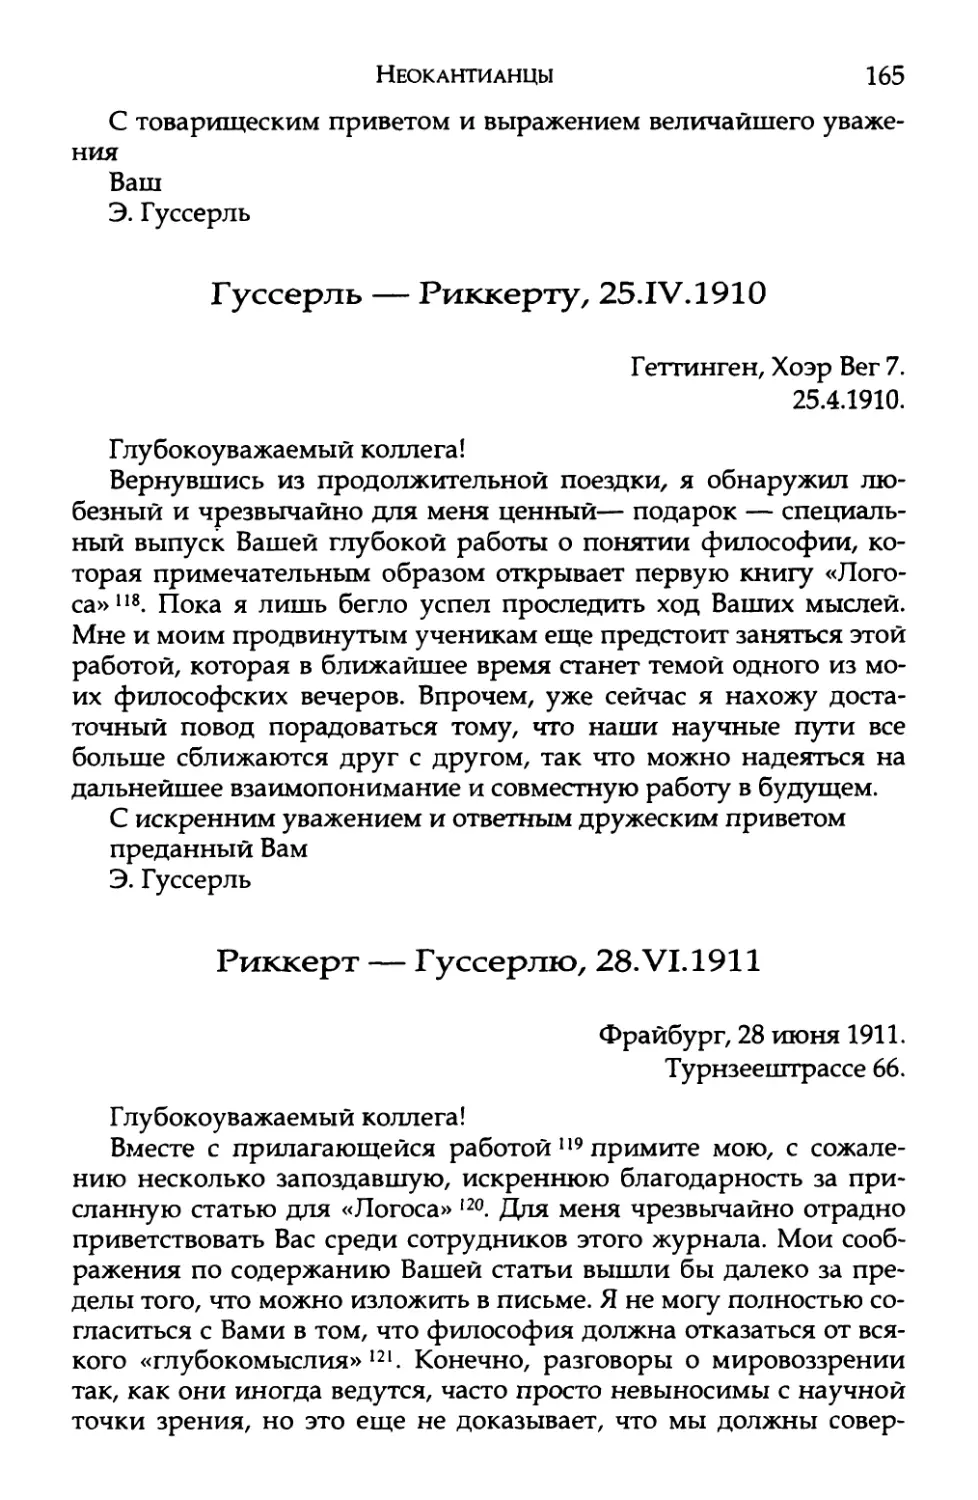 Гуссерль — Риккерту, 25.IV.1910
Риккерт — Гуссерлю, 28.VI.1911